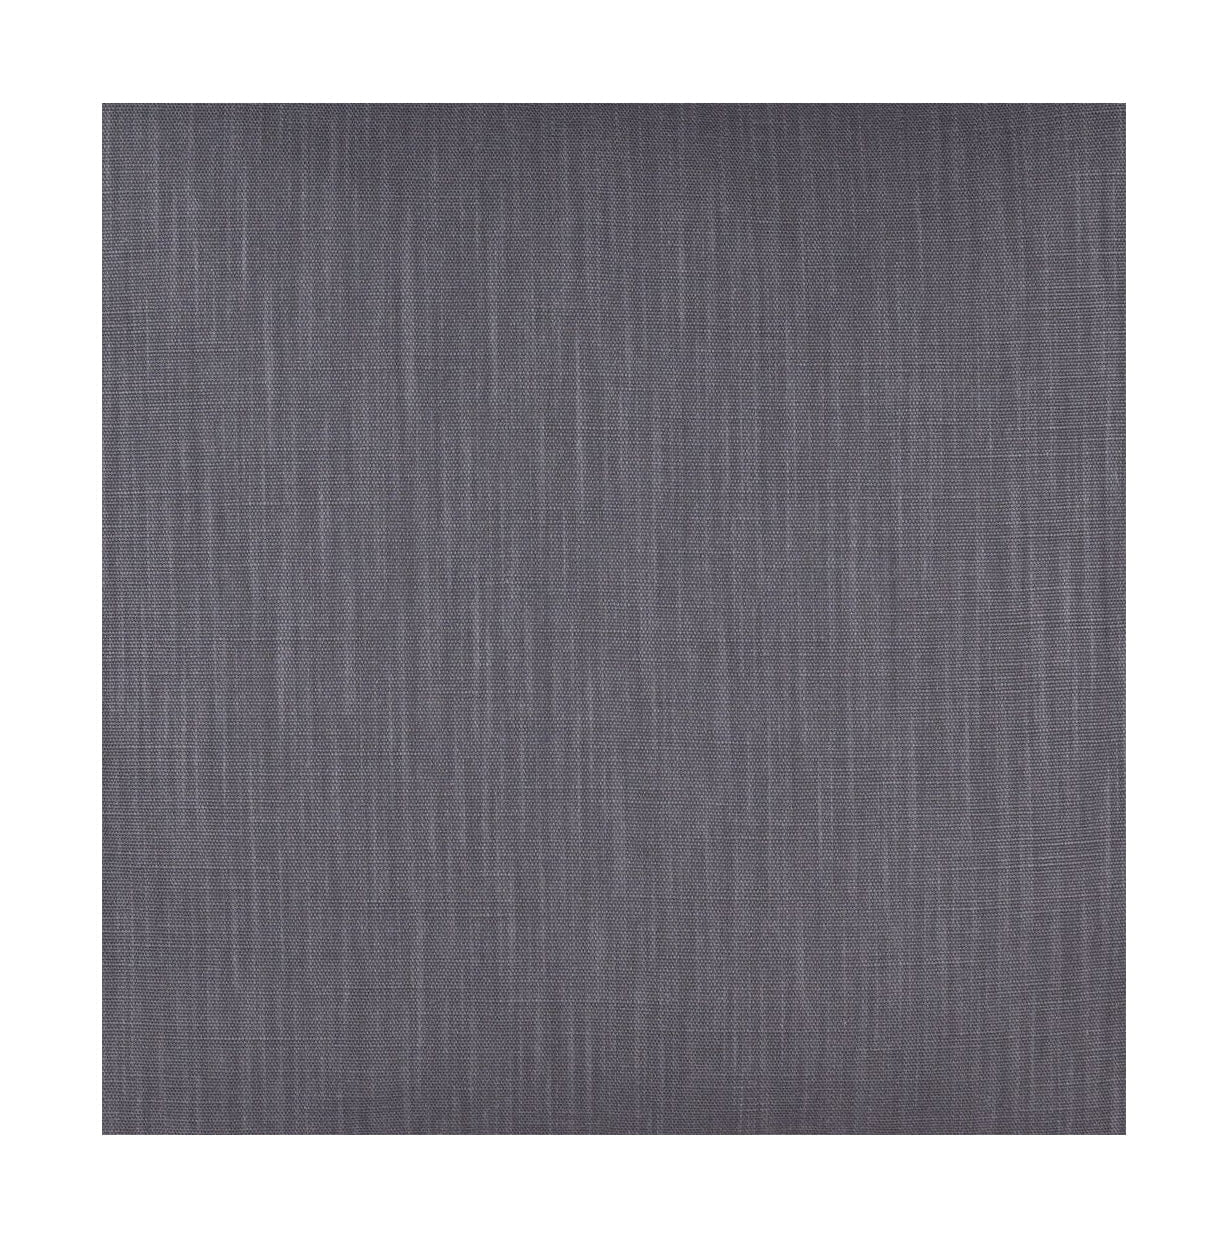 Spira Klotz -stofbreedte 150 cm (prijs per meter), grijs